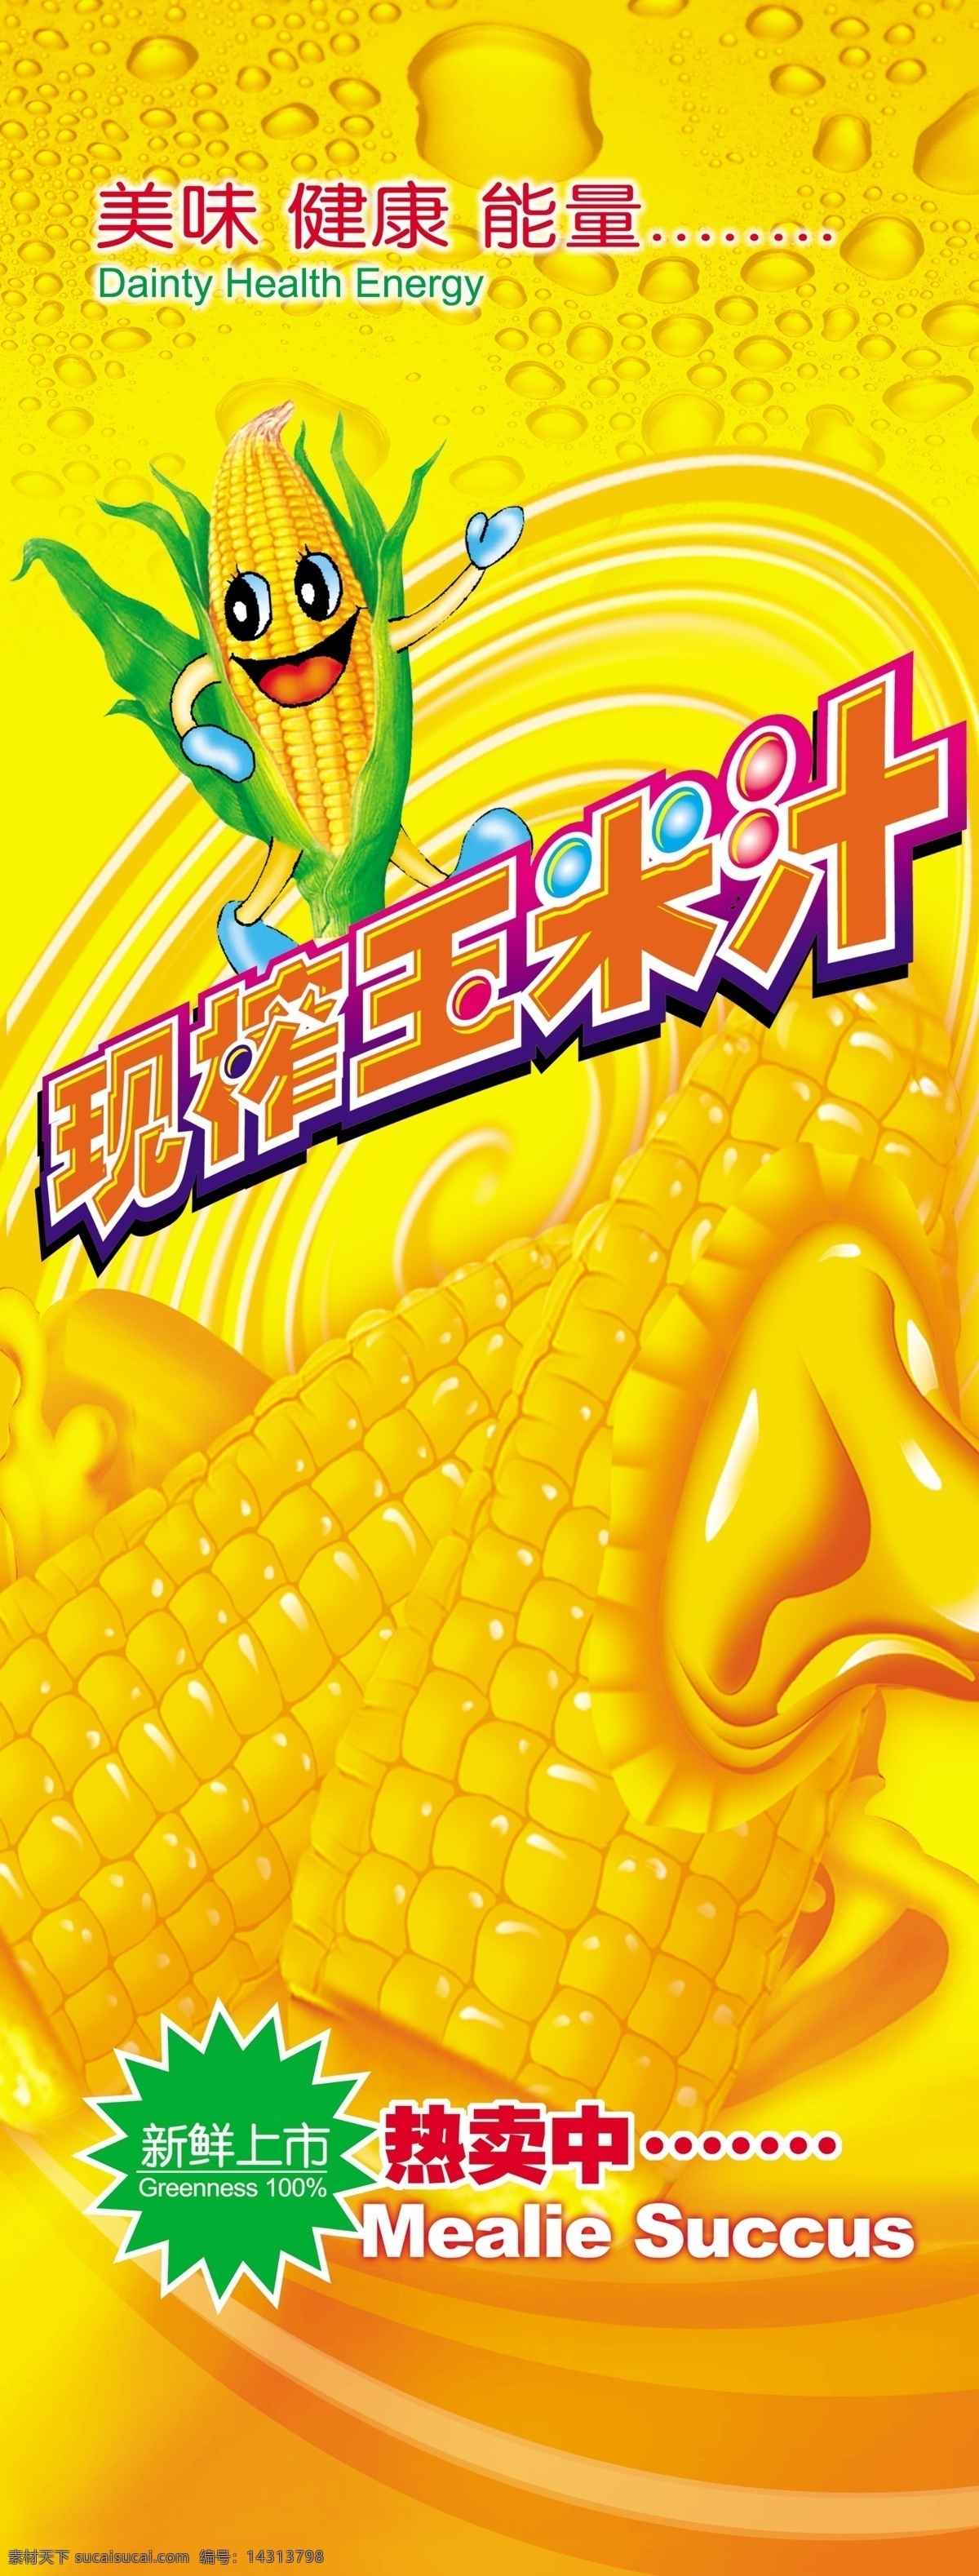 玉米汁 卡通玉米人物 彩色半调 玉米 浅黄绿 风景 广告模版 其他模版 广告设计模板 两折页 展板模板 源文件